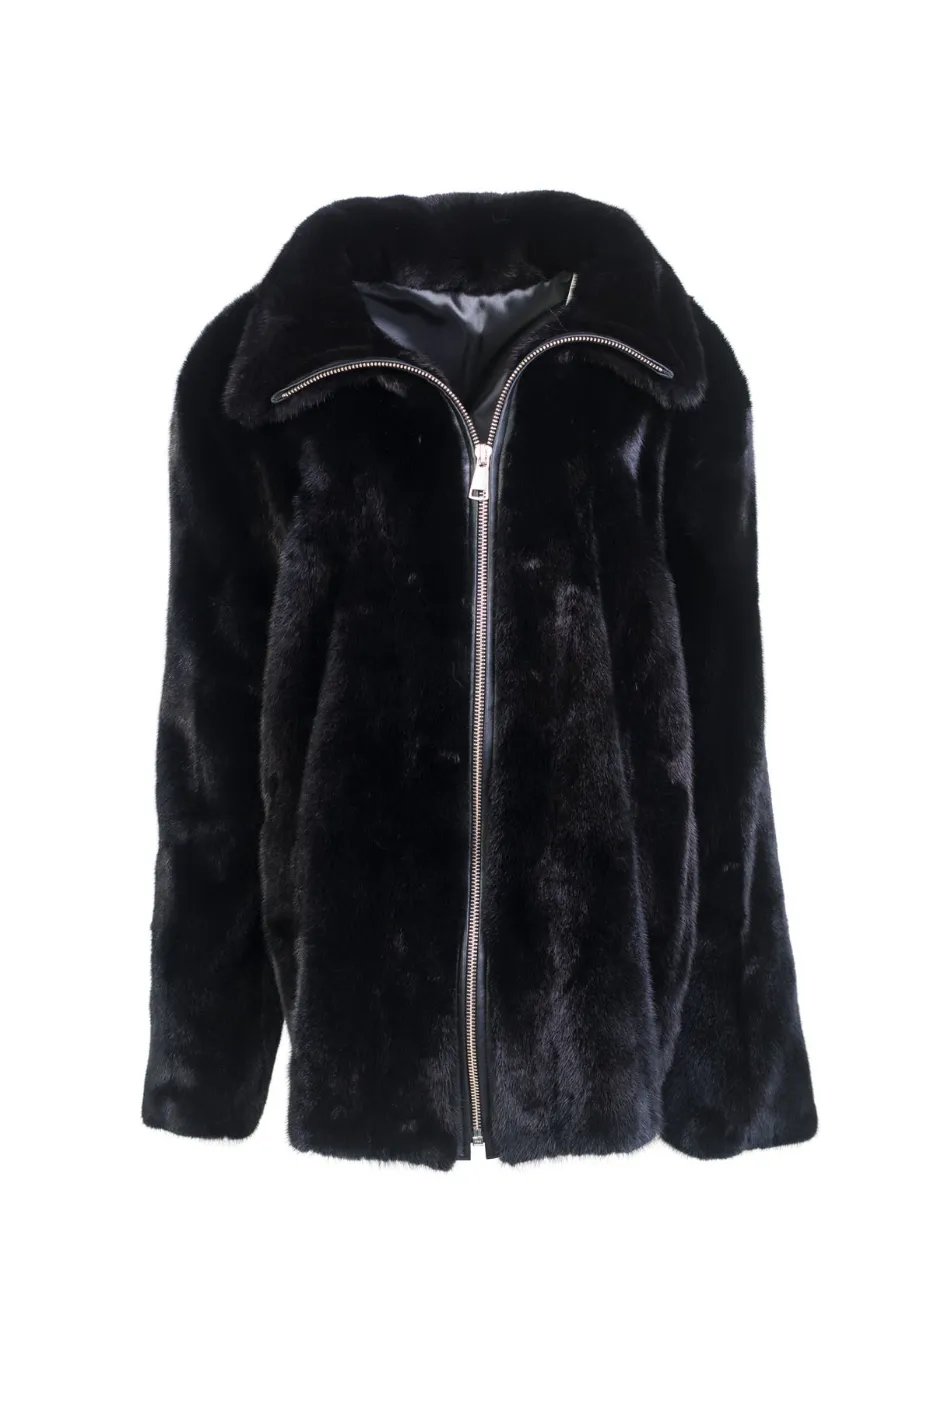 Mens Black Mink Fur Classic Cut Winter Coat - William Jacket